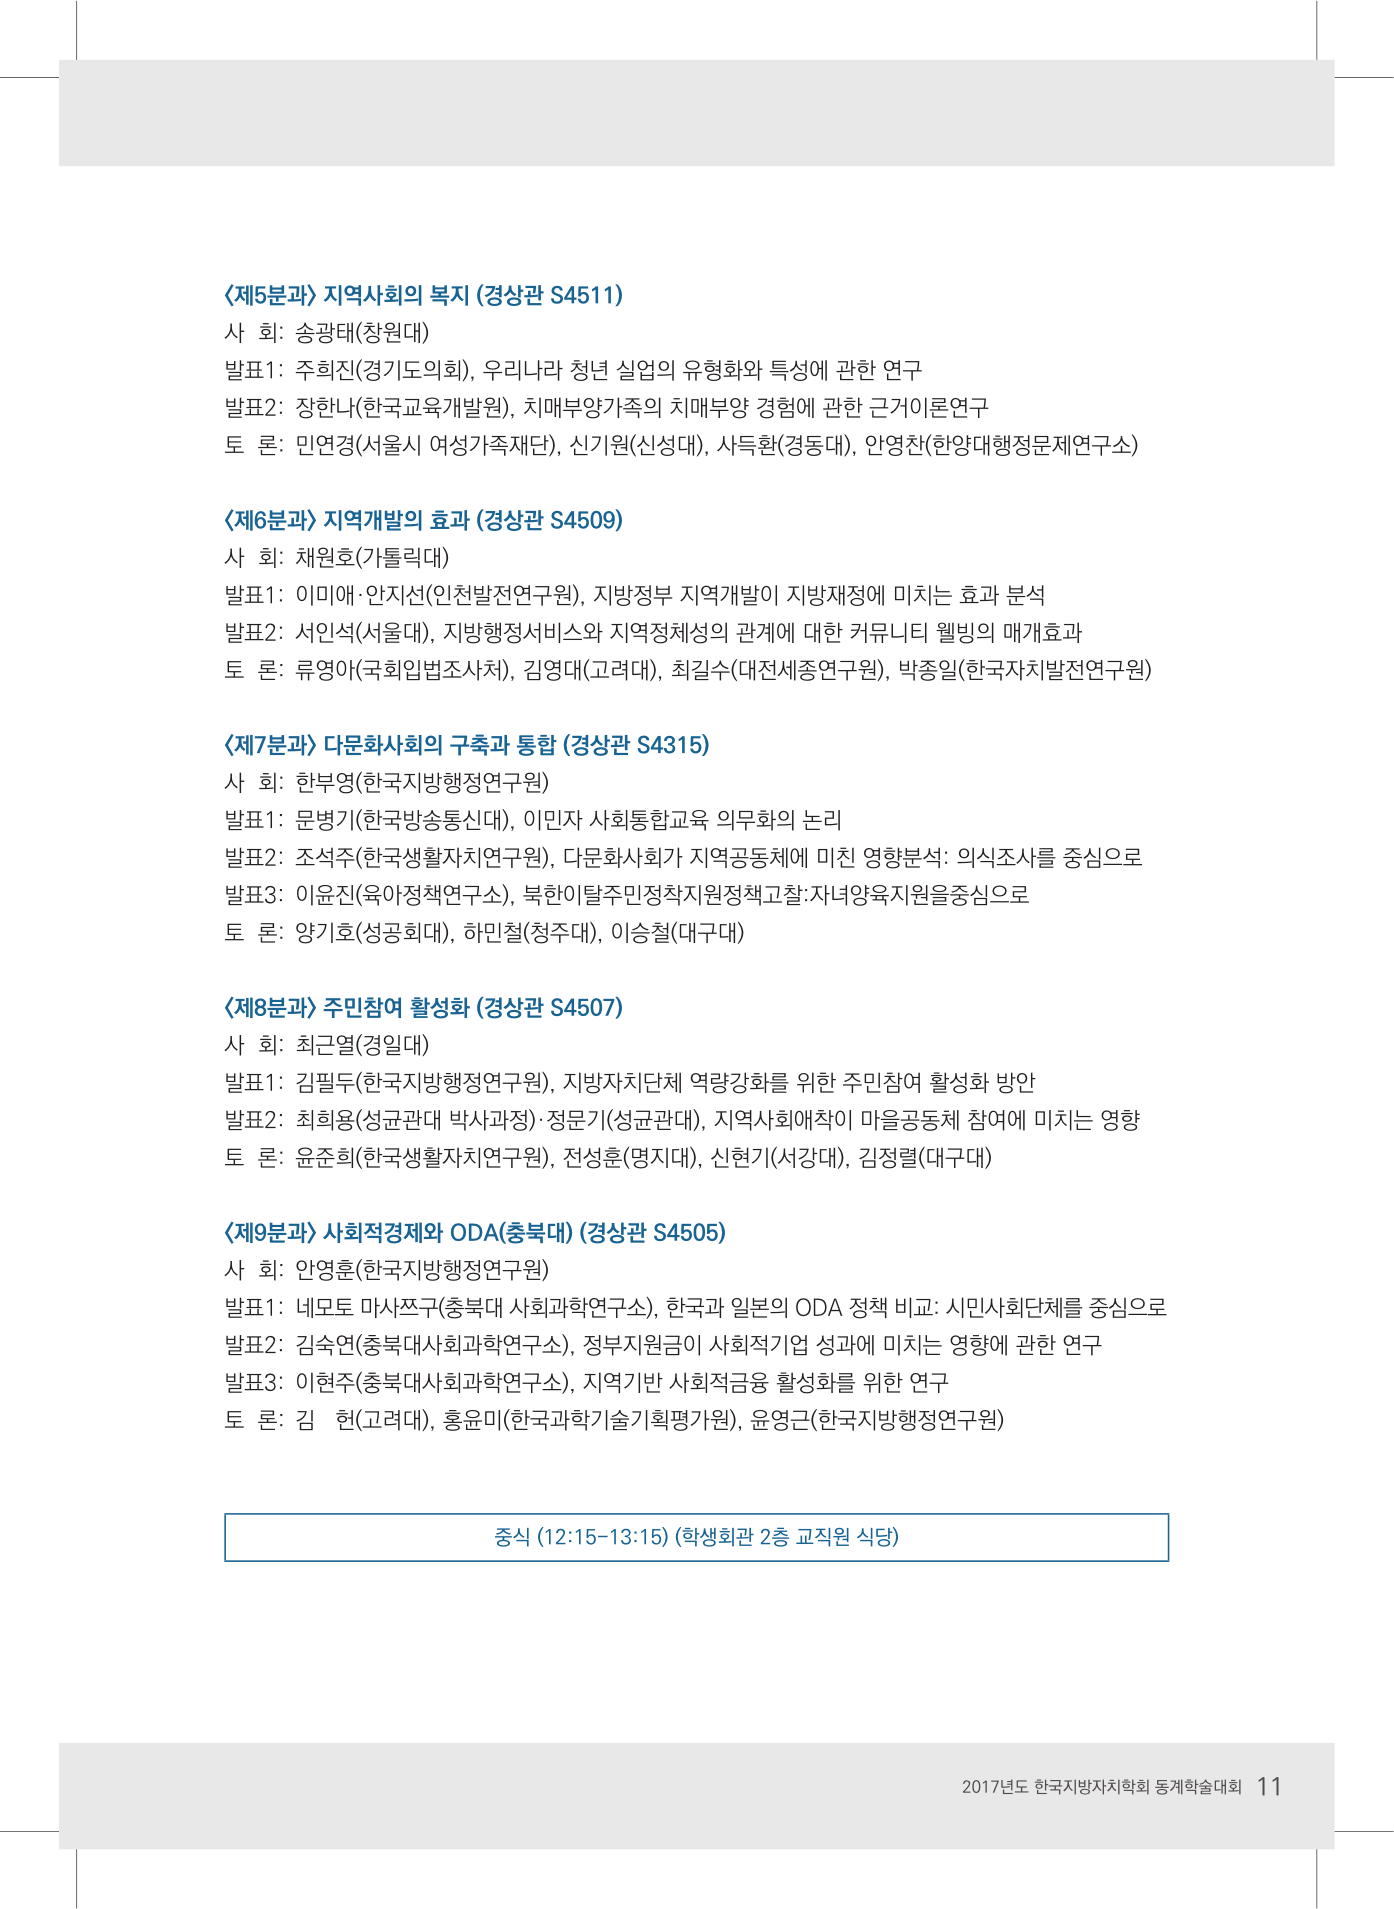 2017 한국지방자치학회 동계학술대회 초청장-11.jpg